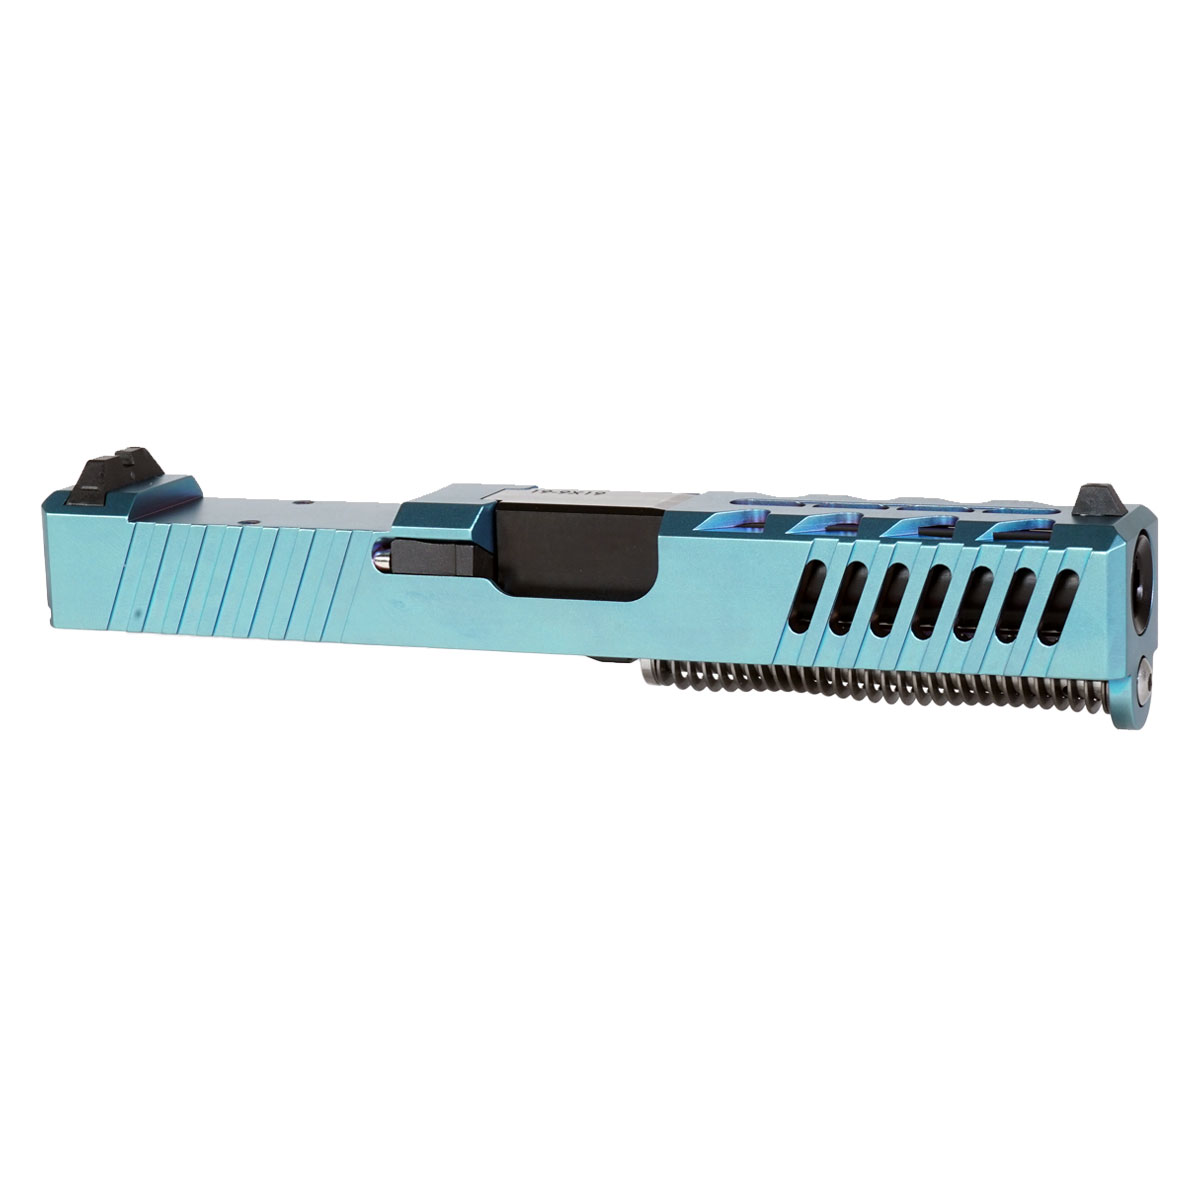 DD 'Ripplemaker' 9mm Complete Slide Kit - Glock 19 Gen 1-3 Compatible